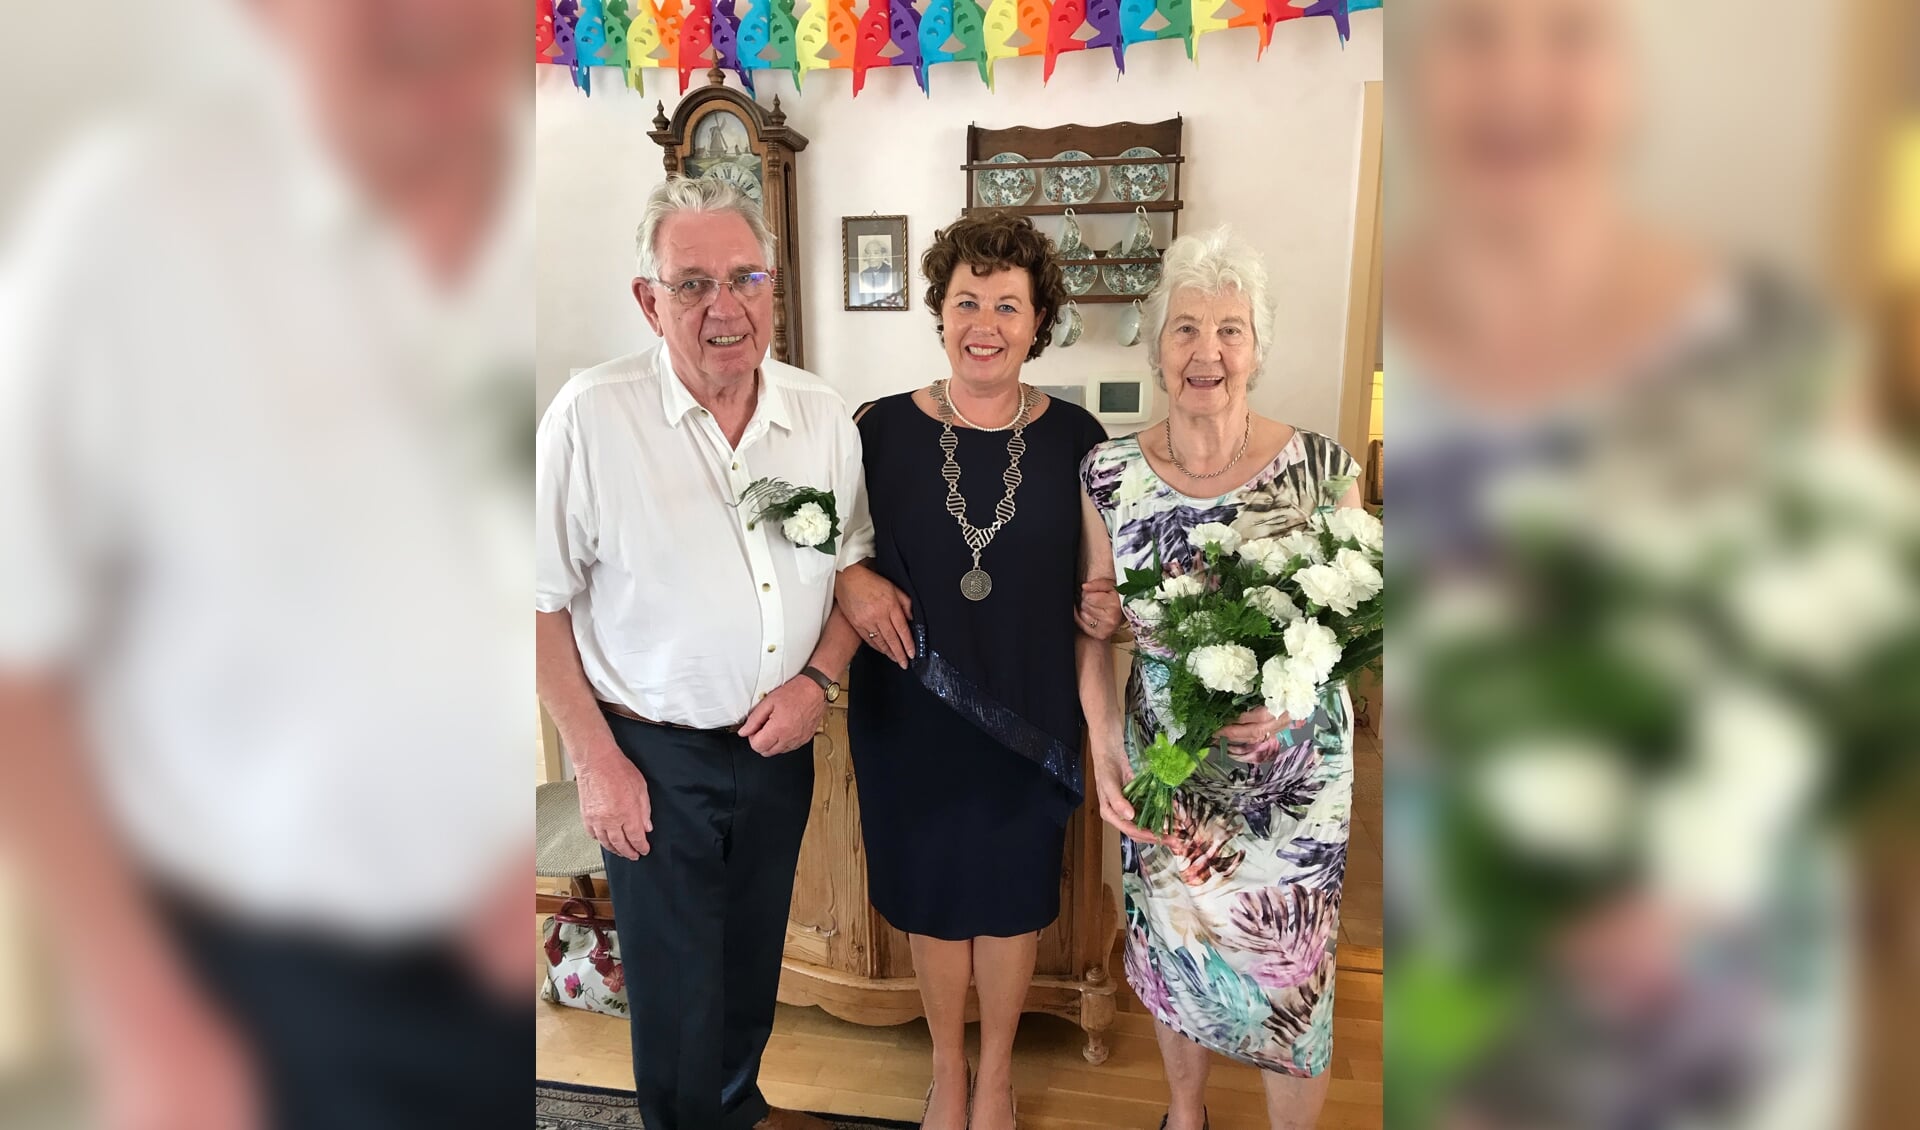 Burgemeester Kompier bracht een bezoek aan het echtpaar Spijker - Leijen in Sint Pancras.